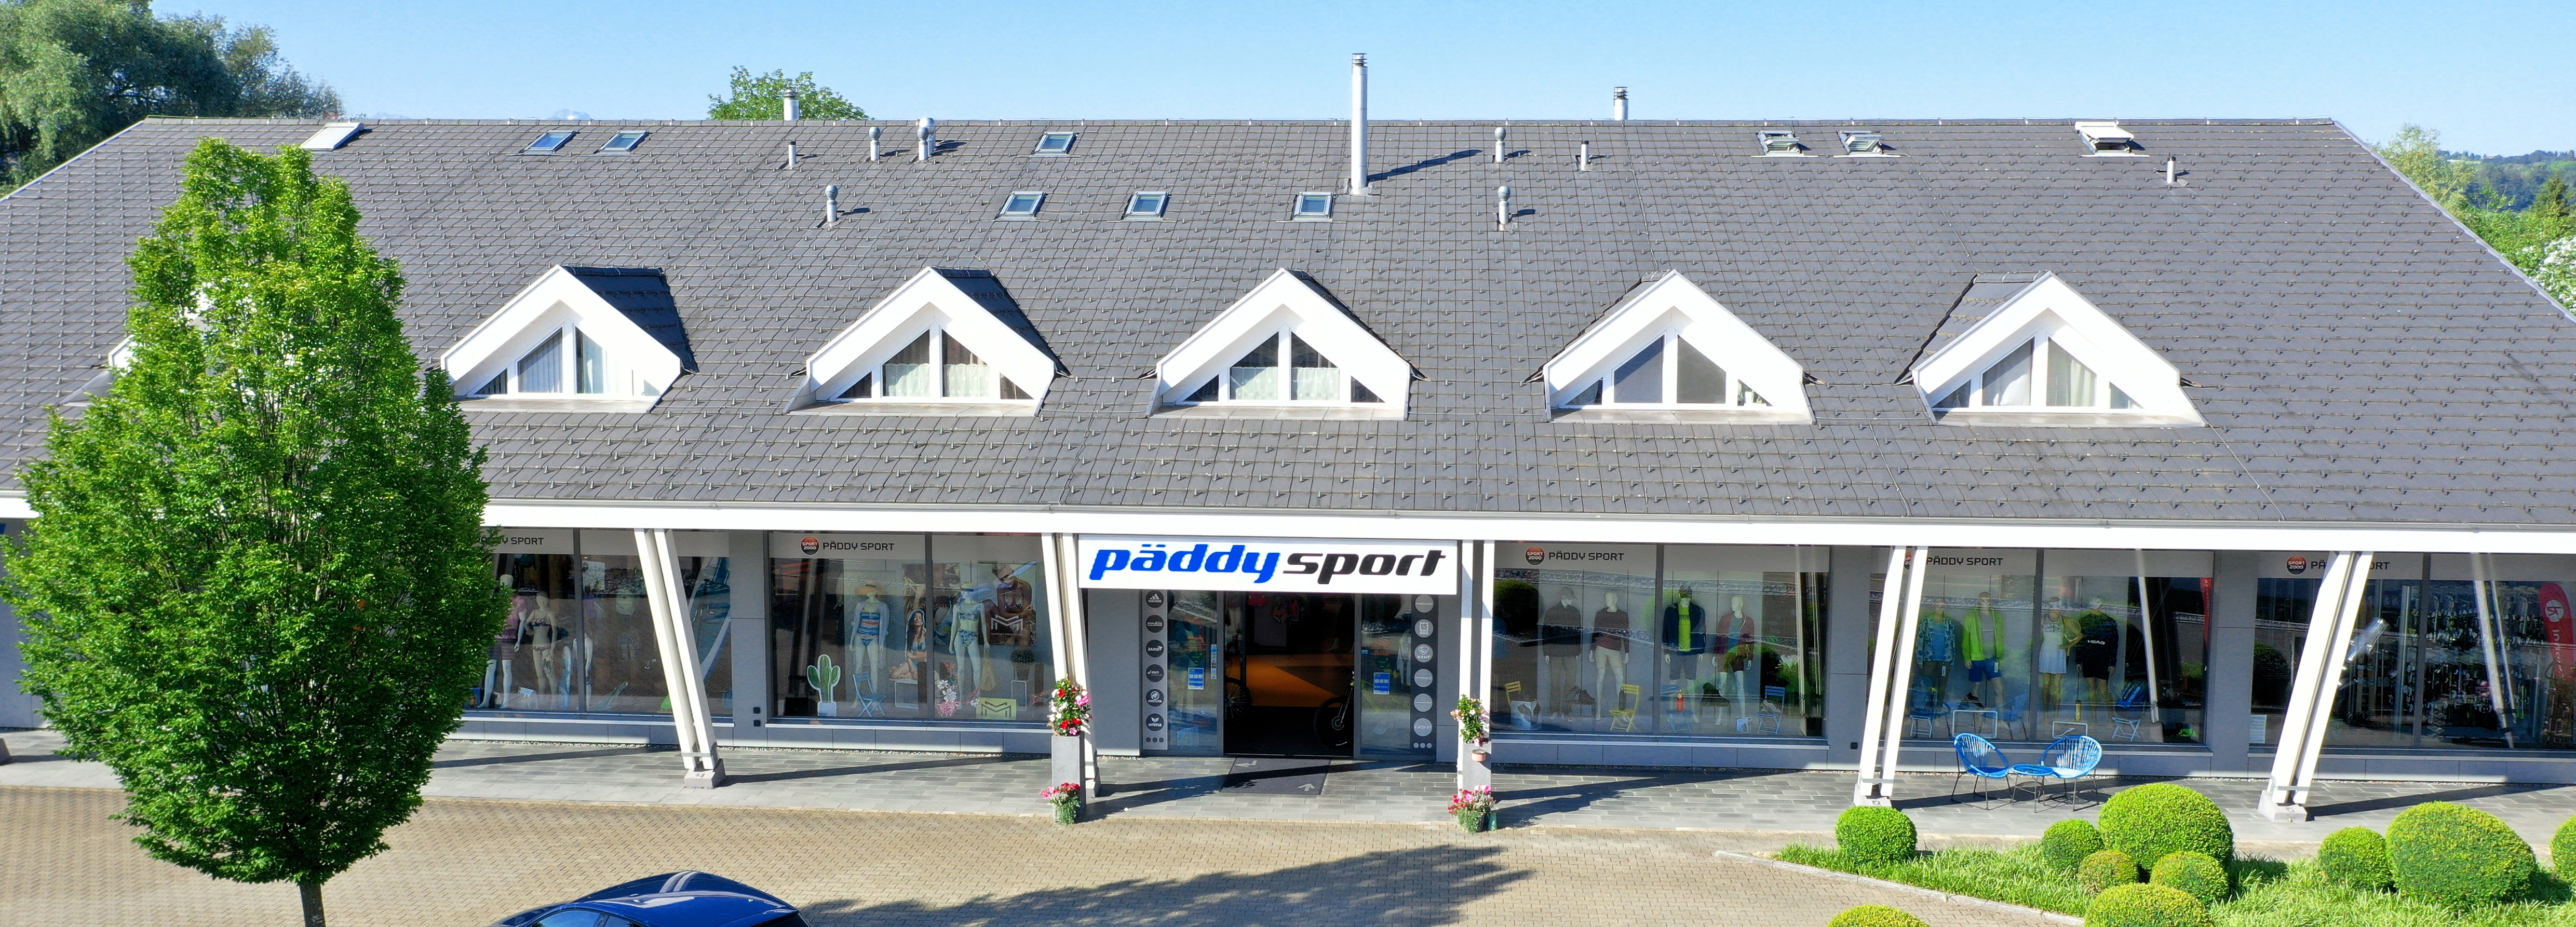 Päddys JAKO Online Shop Title Image